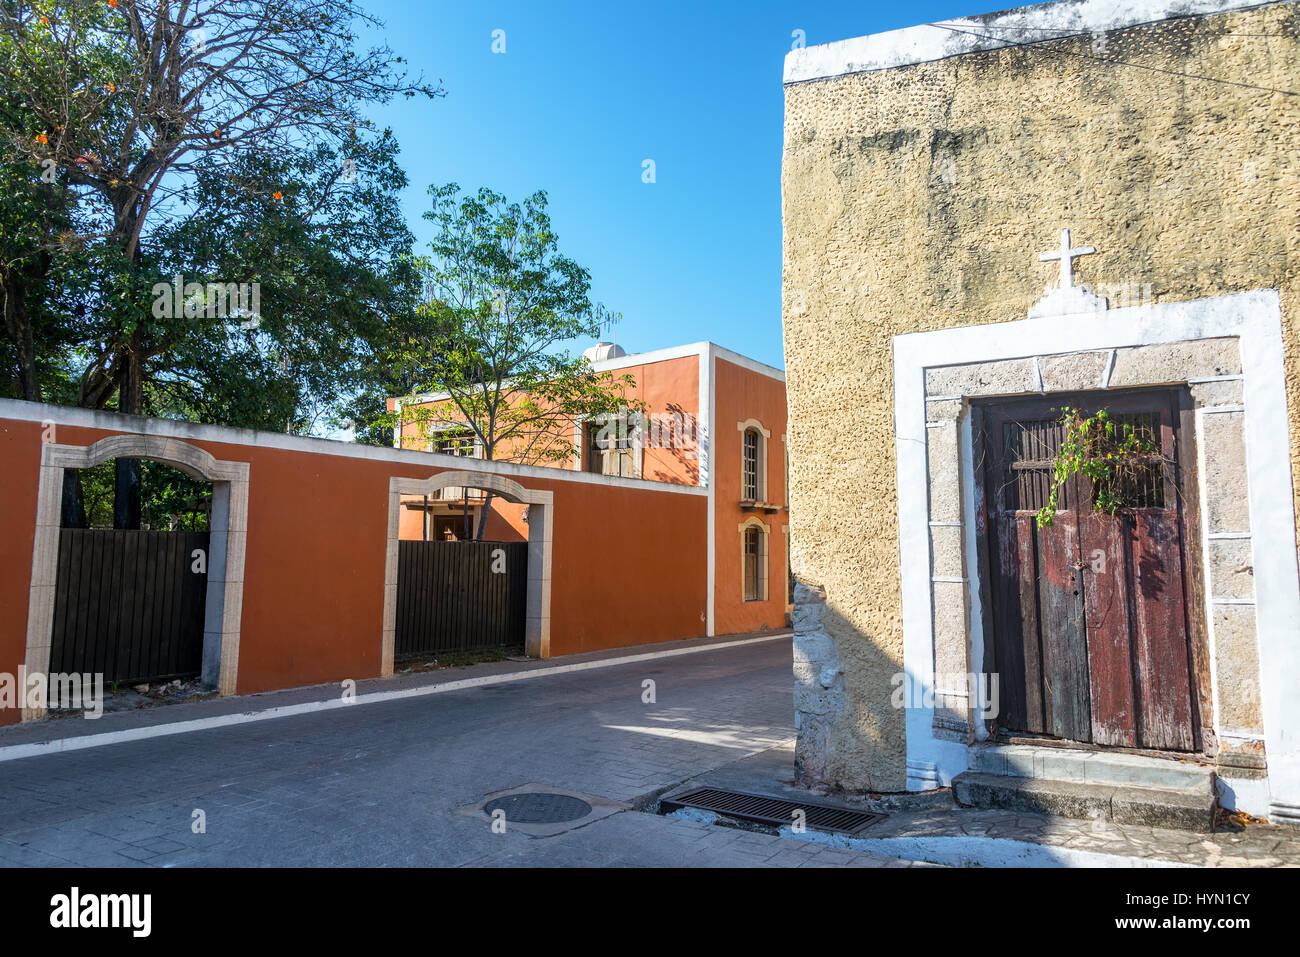 Vue sur rue dans le quartier historique de la ville coloniale de Valladolid, Mexique Banque D'Images